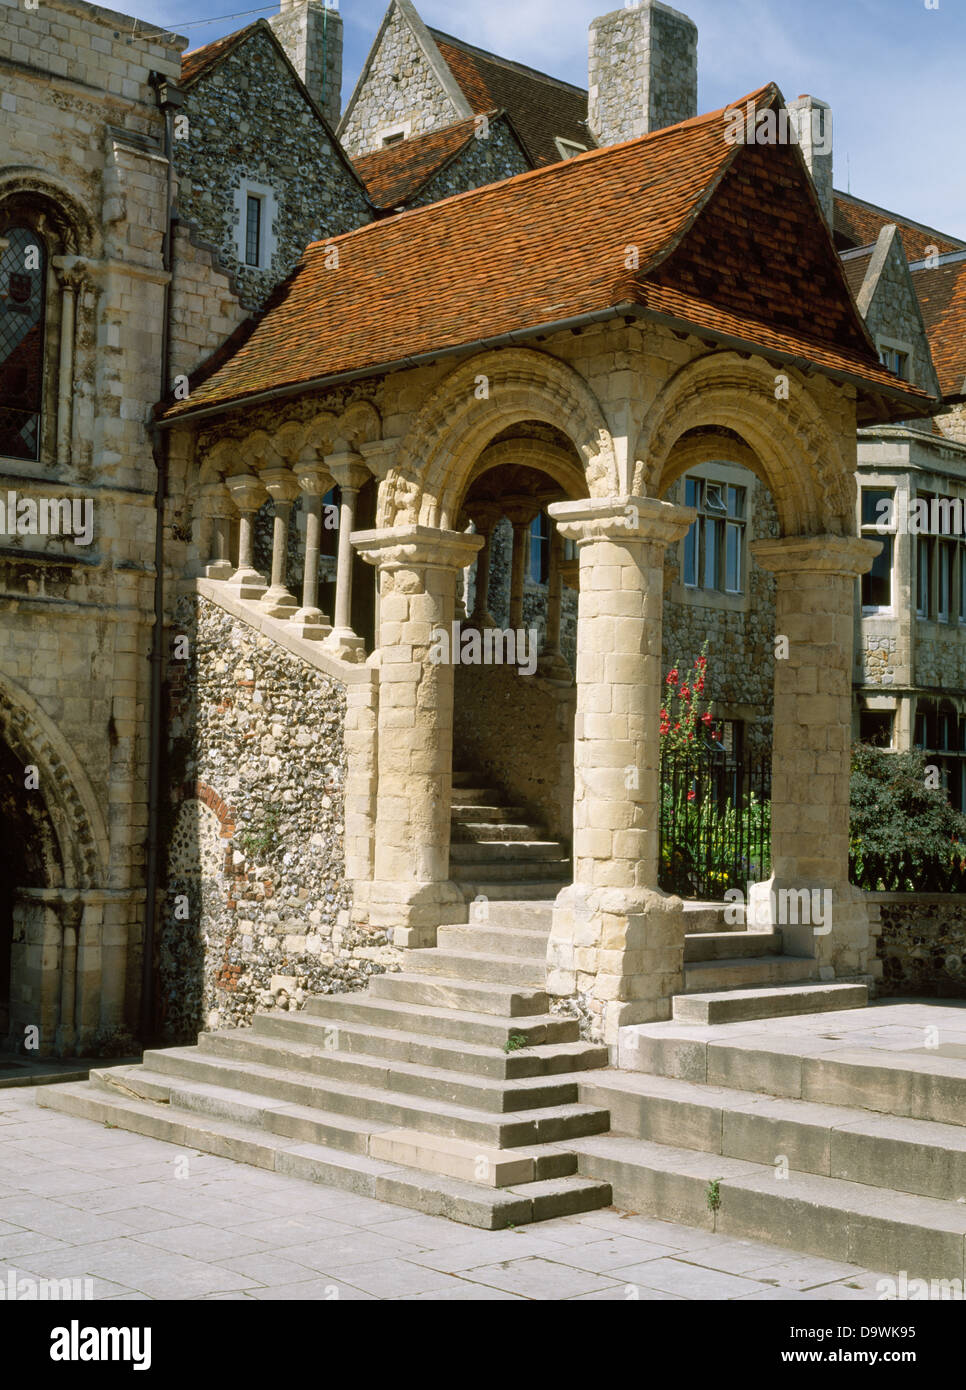 Canterbury, Kent : le grand escalier Norman (c 1153) conduisant à l'Almonry de l'ancien prieuré bénédictin de l'Église du Christ (La Cathédrale de Canterbury). Banque D'Images